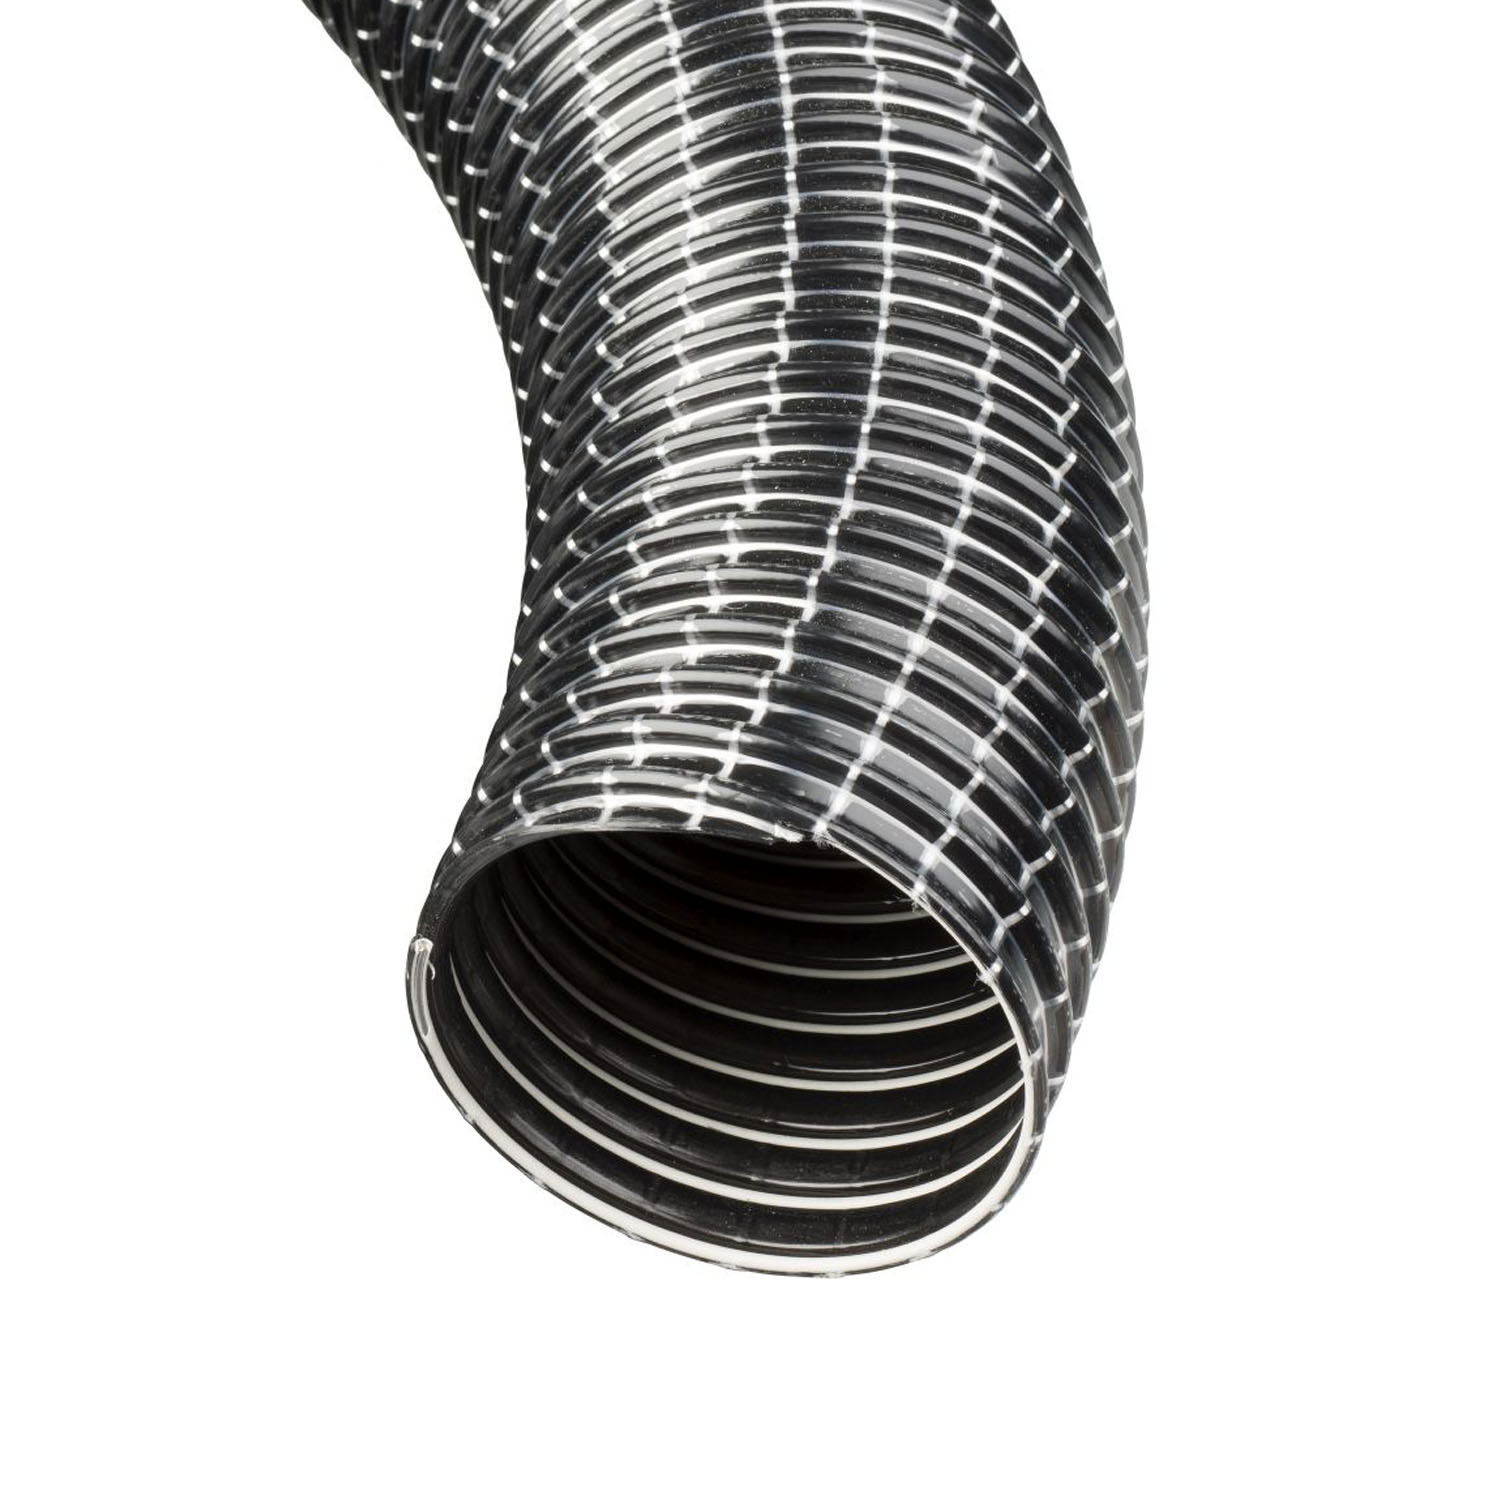 Weich-PVC Schlauch Ø 80 mm mit Hart-PVC-Spirale, grau – kaufen bei